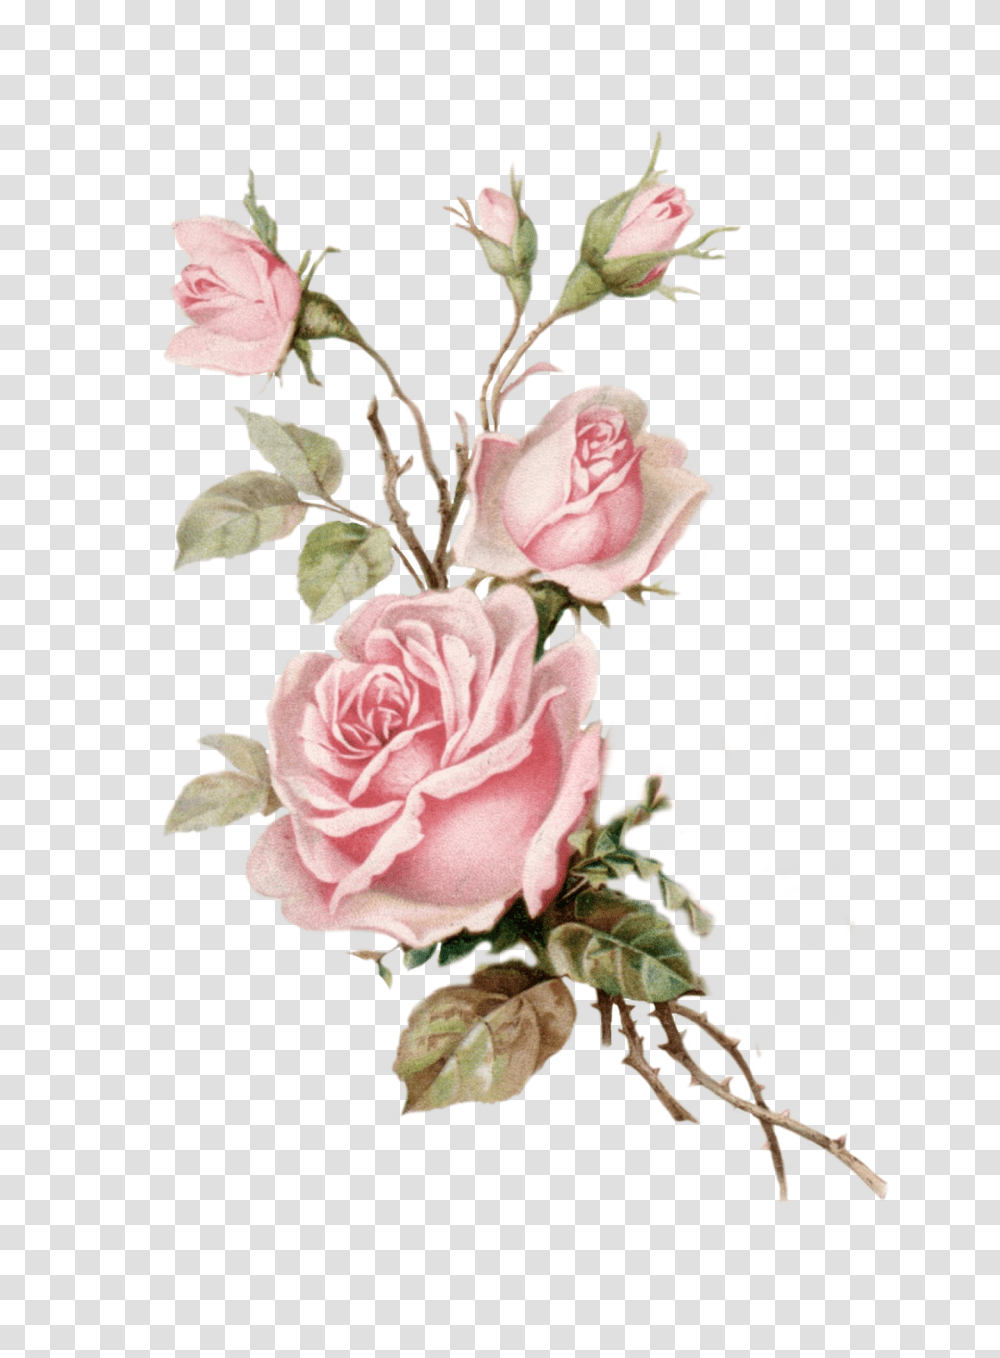 Download Vintage Pink Rose Cut Out Pink Vintage Rose, Floral Design, Pattern, Graphics, Art Transparent Png